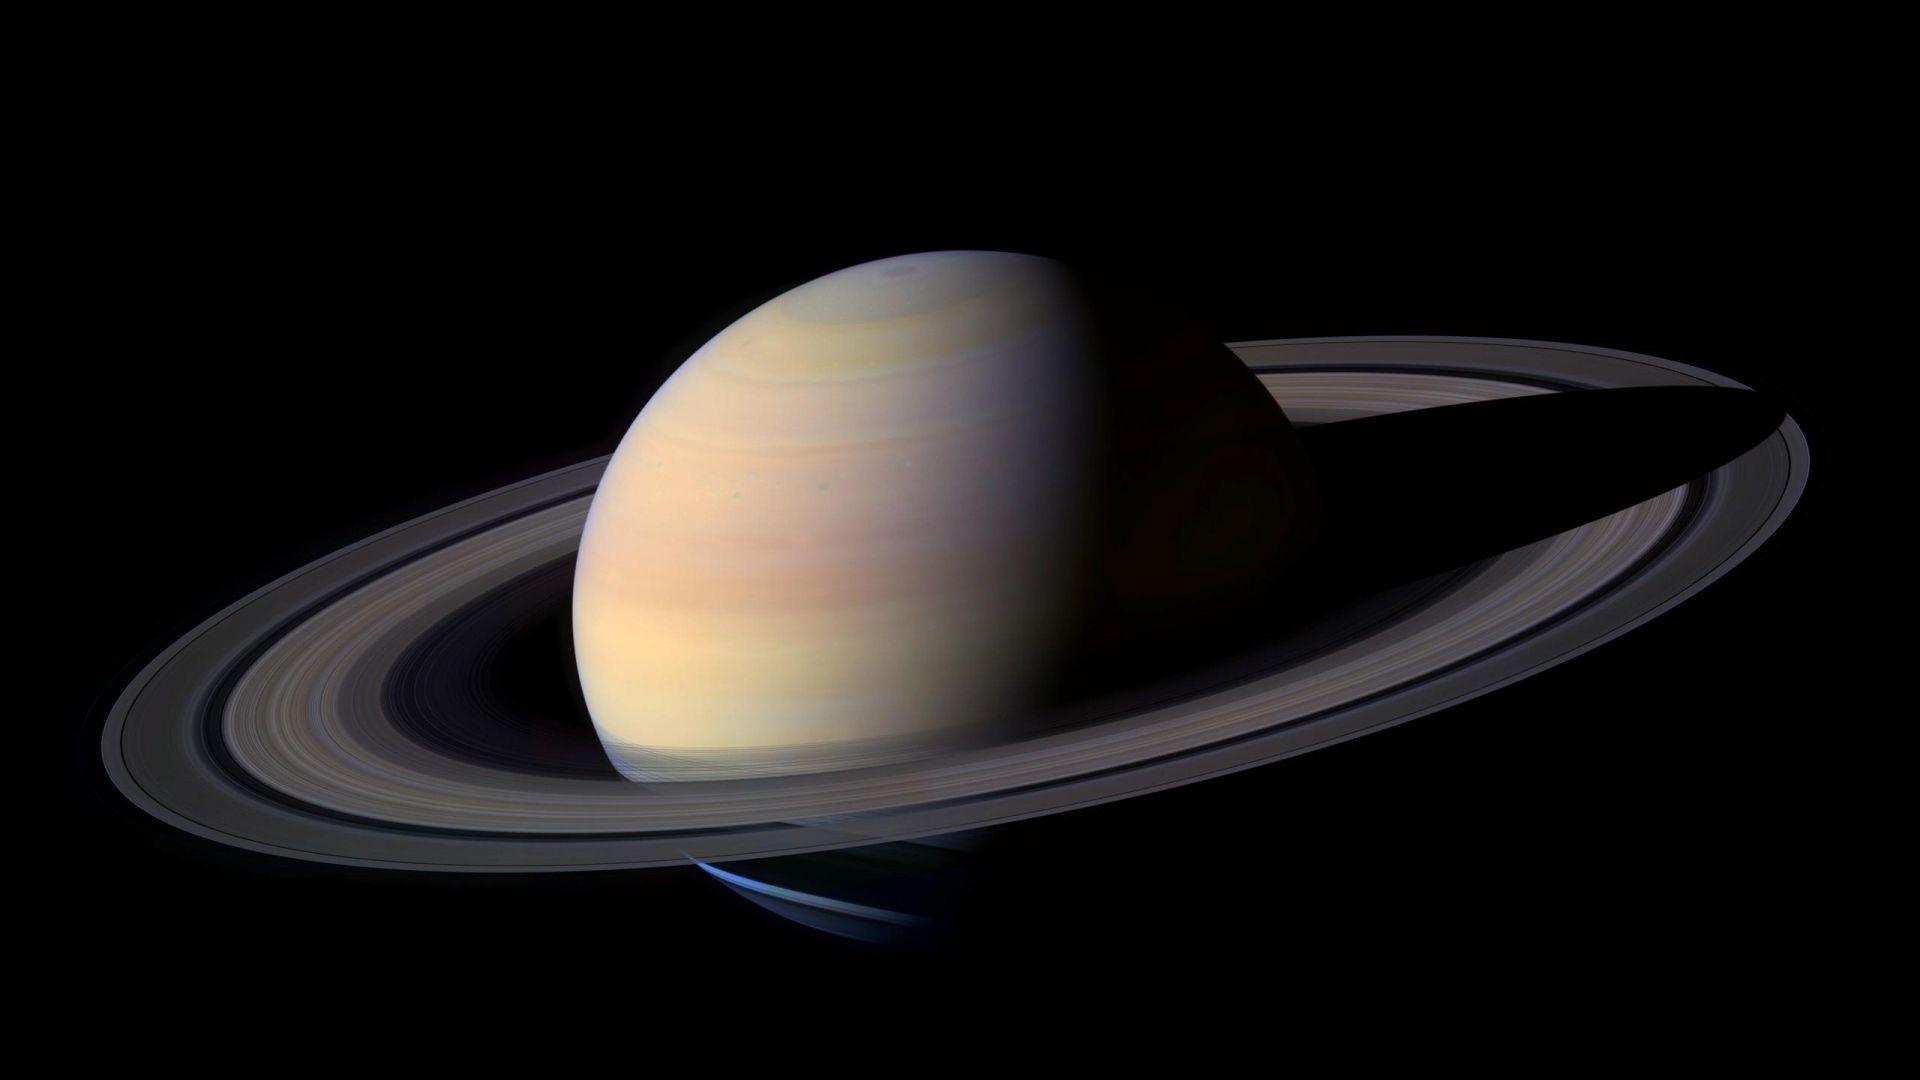 Saturn HD Pics 03462